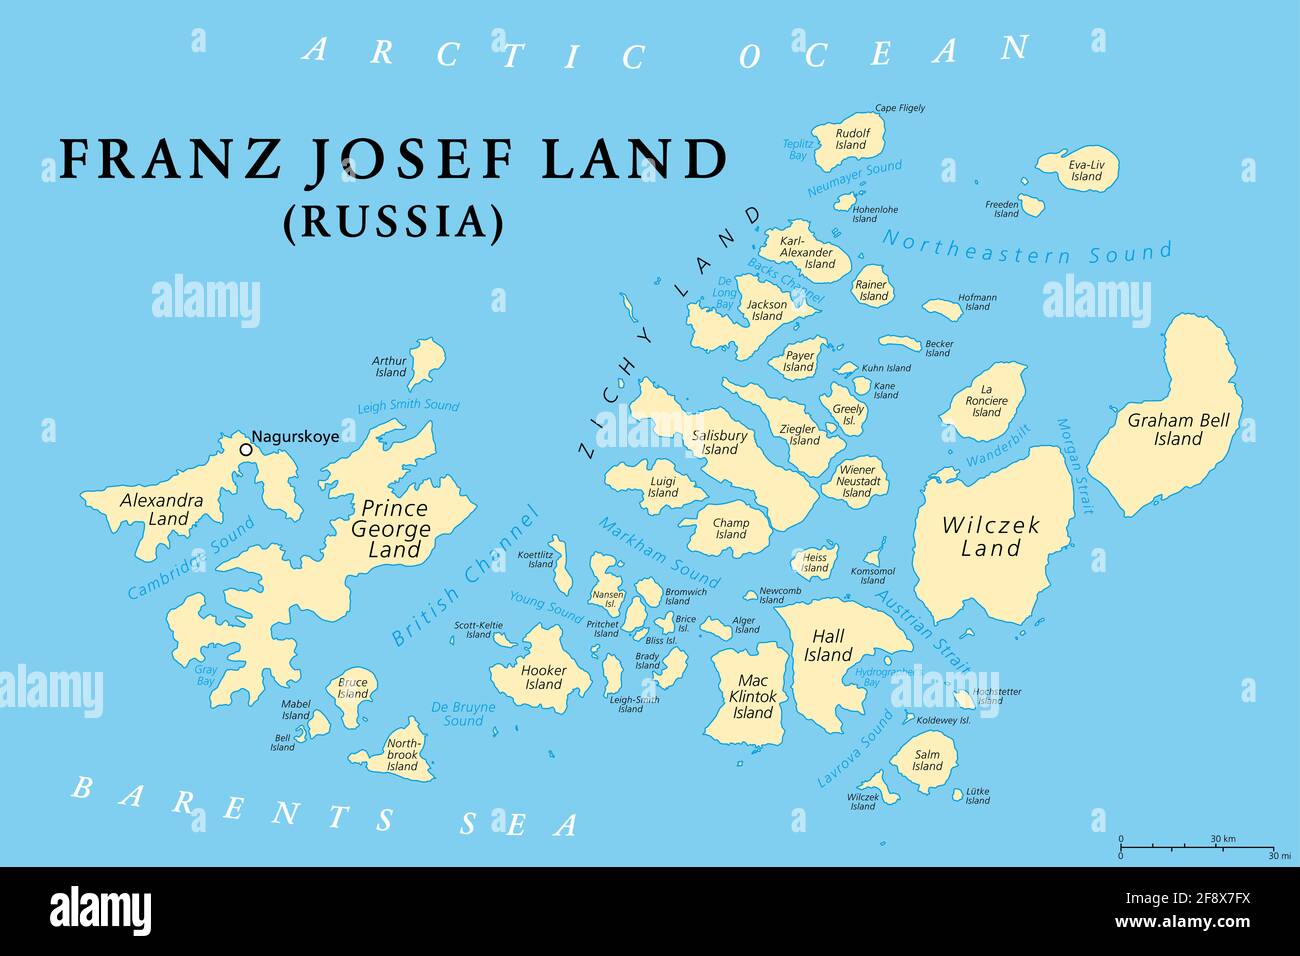 Franz Josef Land, politische Landkarte. Russische Inselgruppe im Arktischen Ozean, nördlichster Teil des Archangelsk-Gebiets. Stockfoto